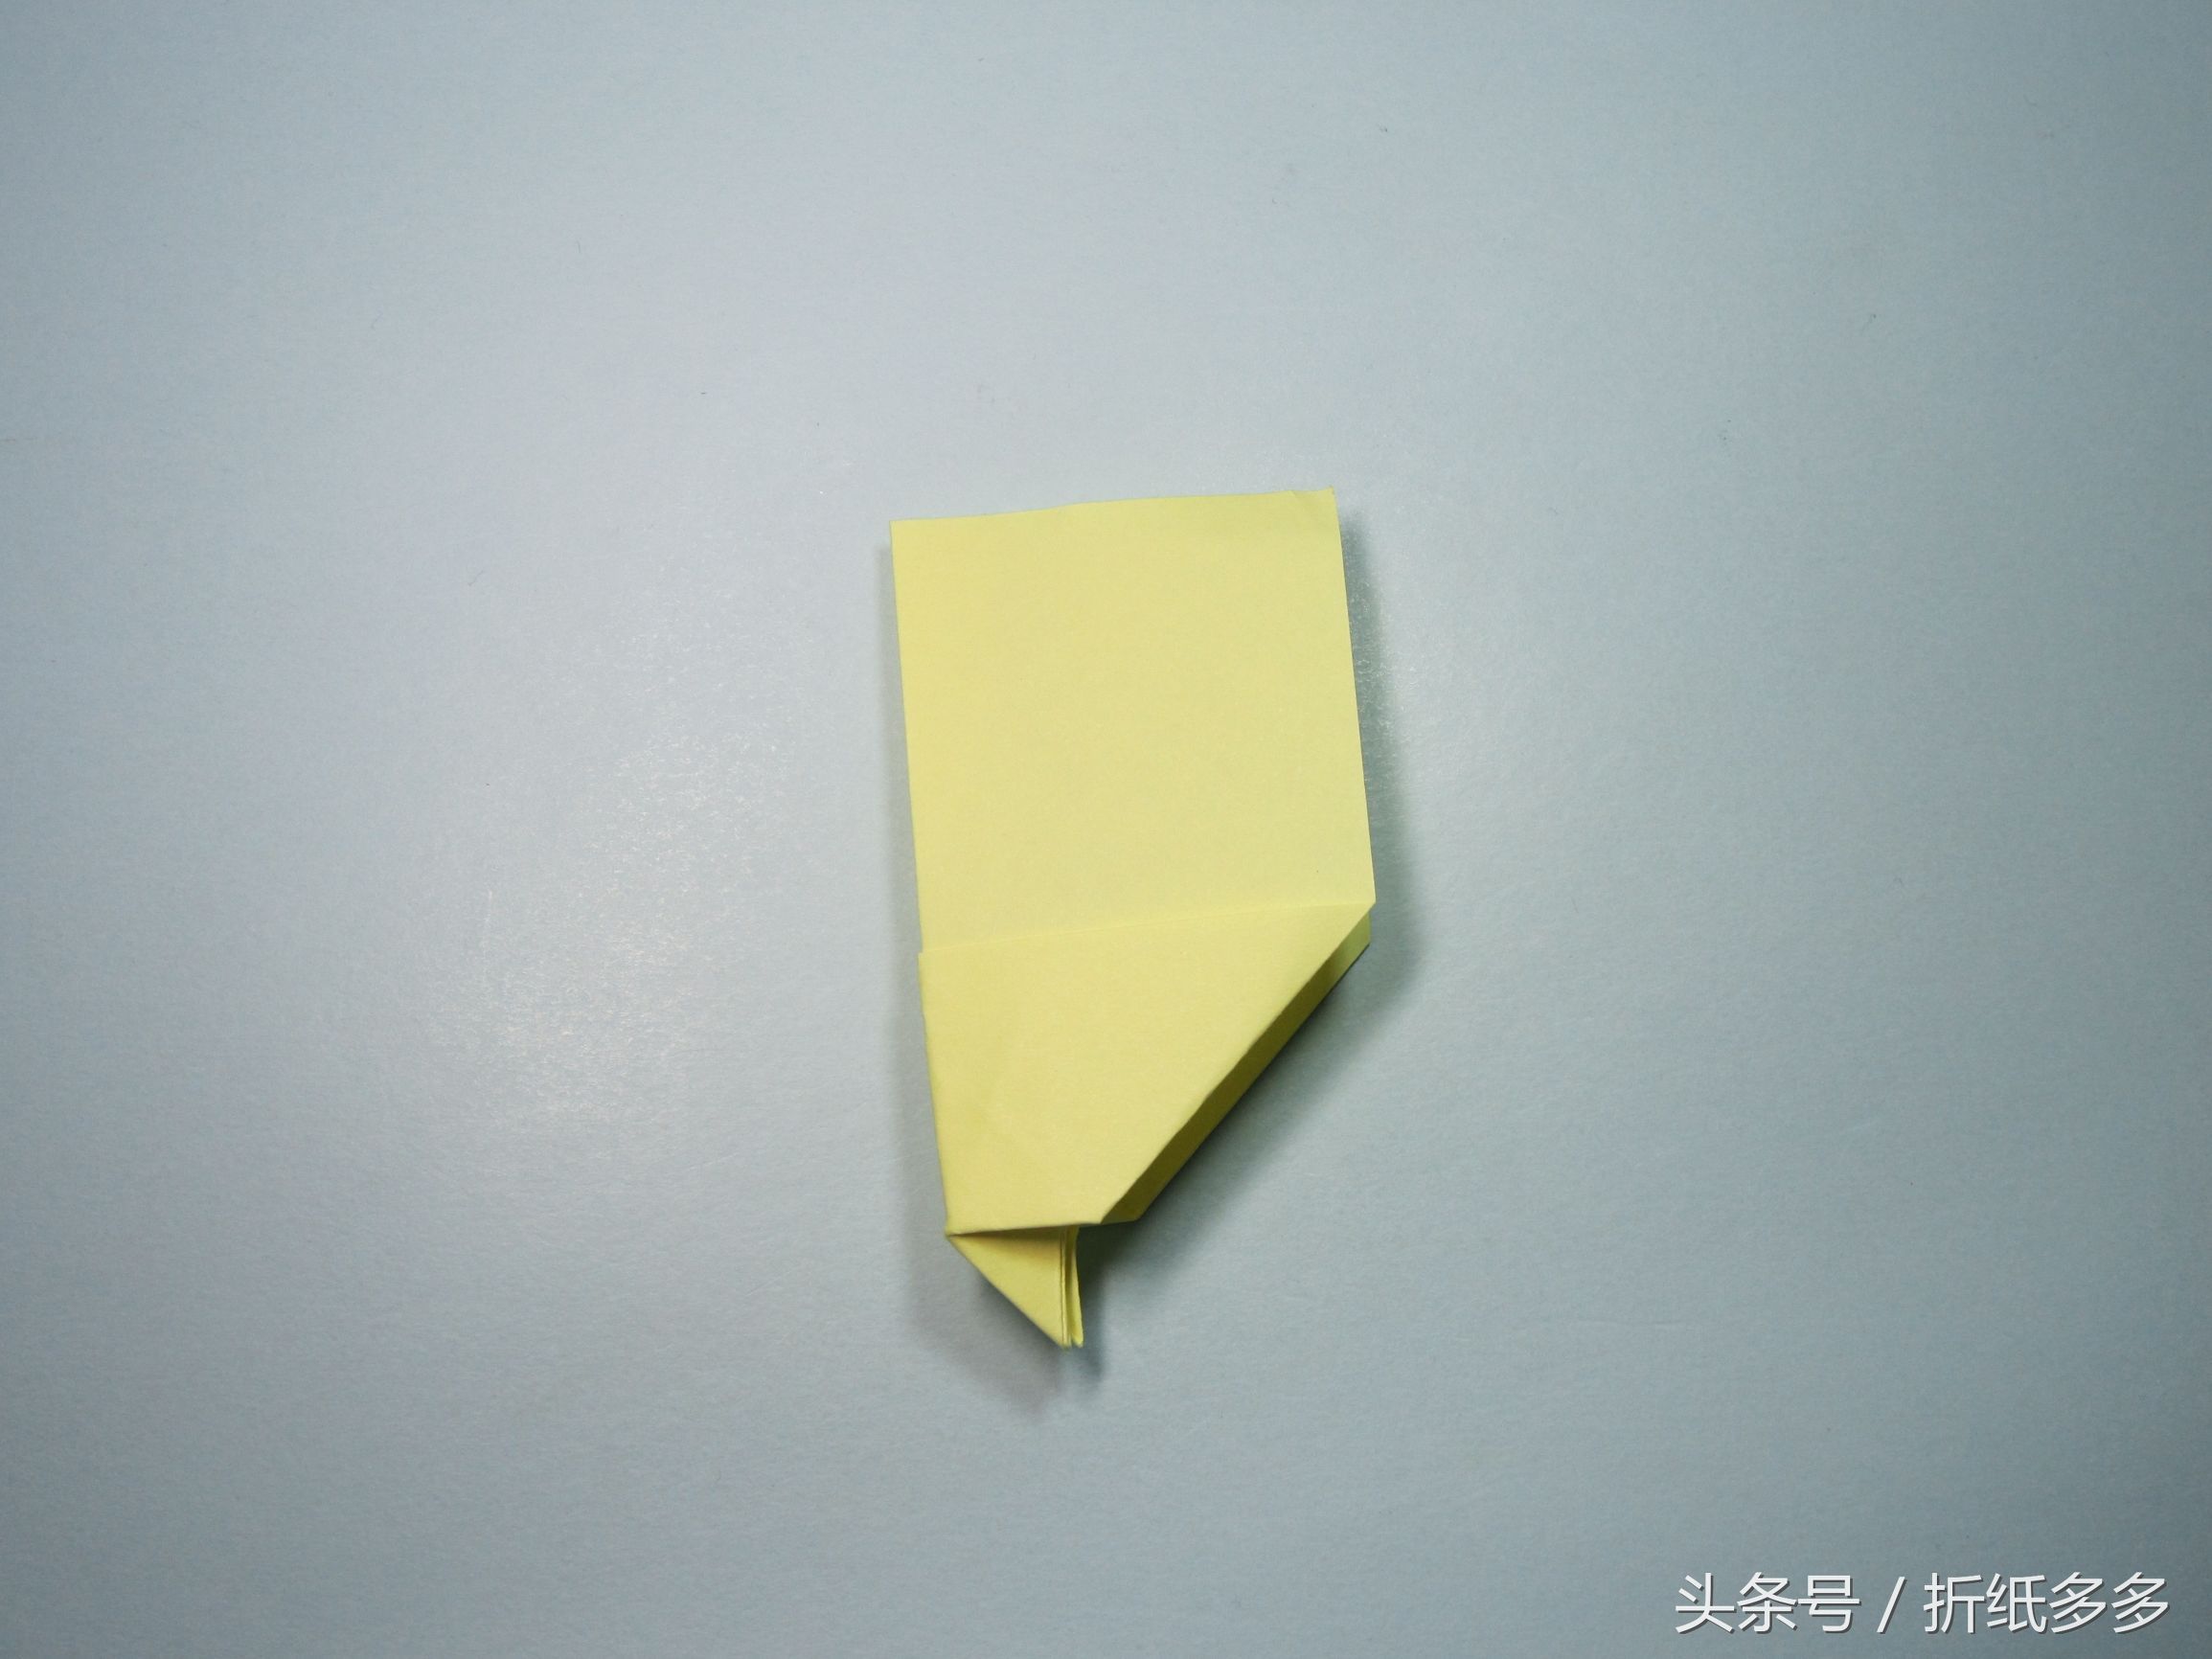 折纸飞得久的飞机步骤图解 2分钟学会简单的纸飞机折纸教程